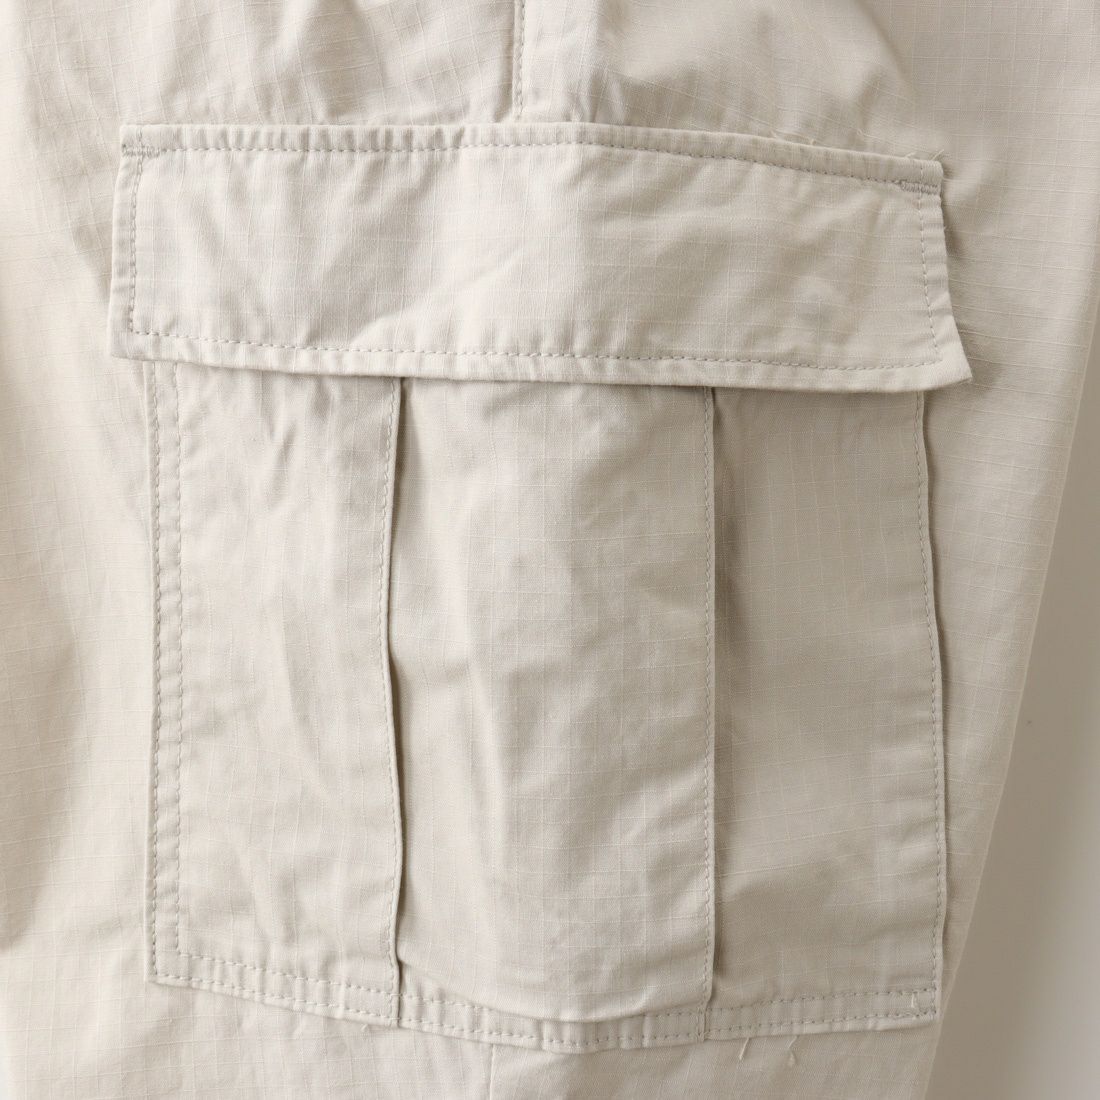 Jeans Factory Clothes [ジーンズファクトリークローズ] リップストップカーゴパンツ [JFC-231-028] 68 OFF